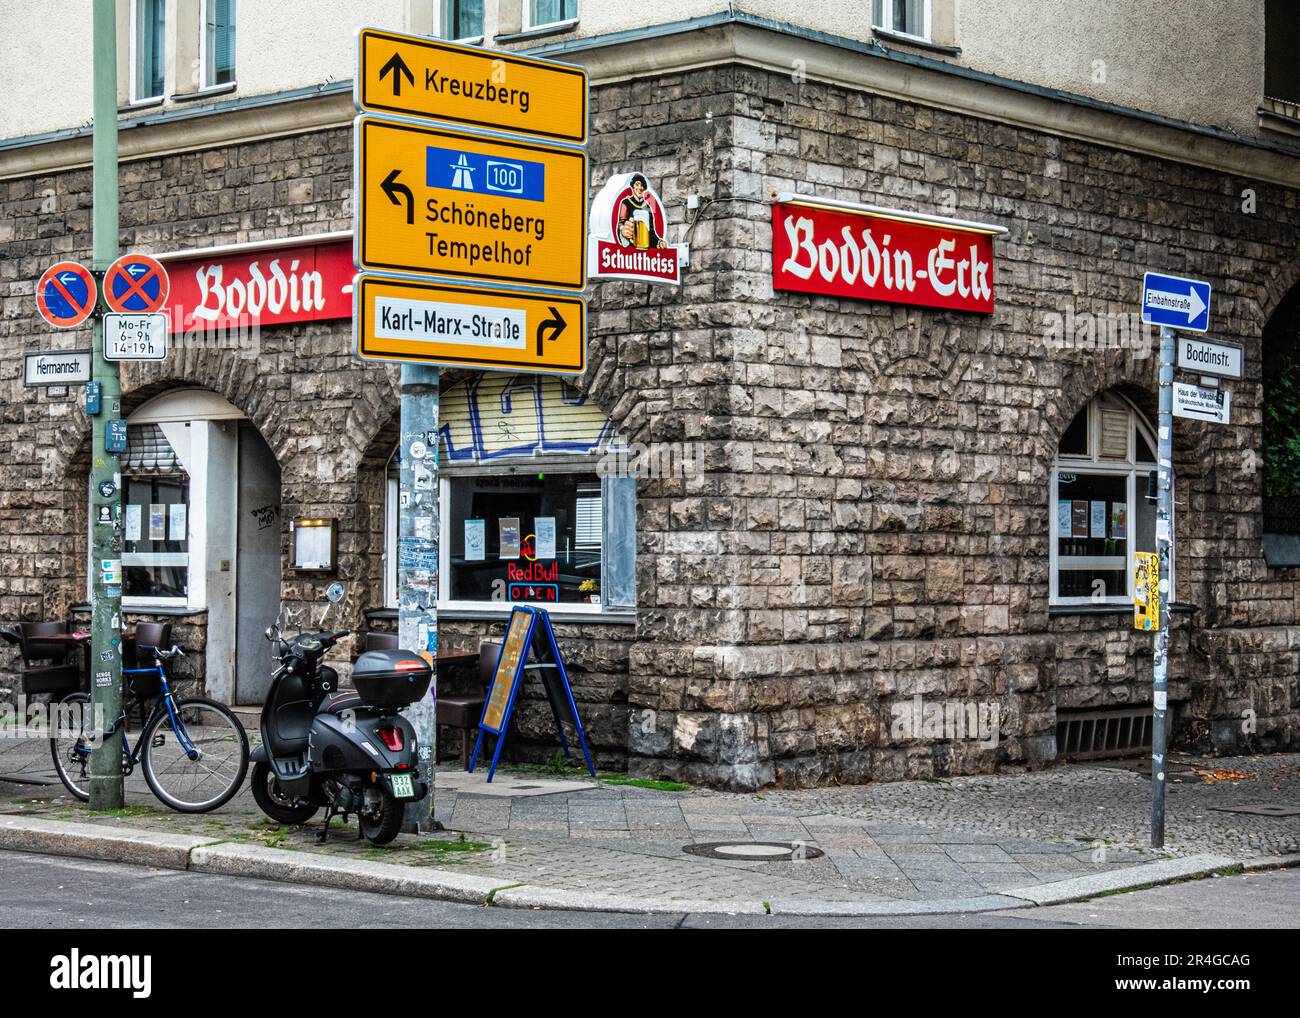 Boddin-Eck Pub dans un ancien immeuble d'appartements historique, cnr. Hermannstr. Et Boddinstr., Neukölln, Berlin, Allemagne Banque D'Images